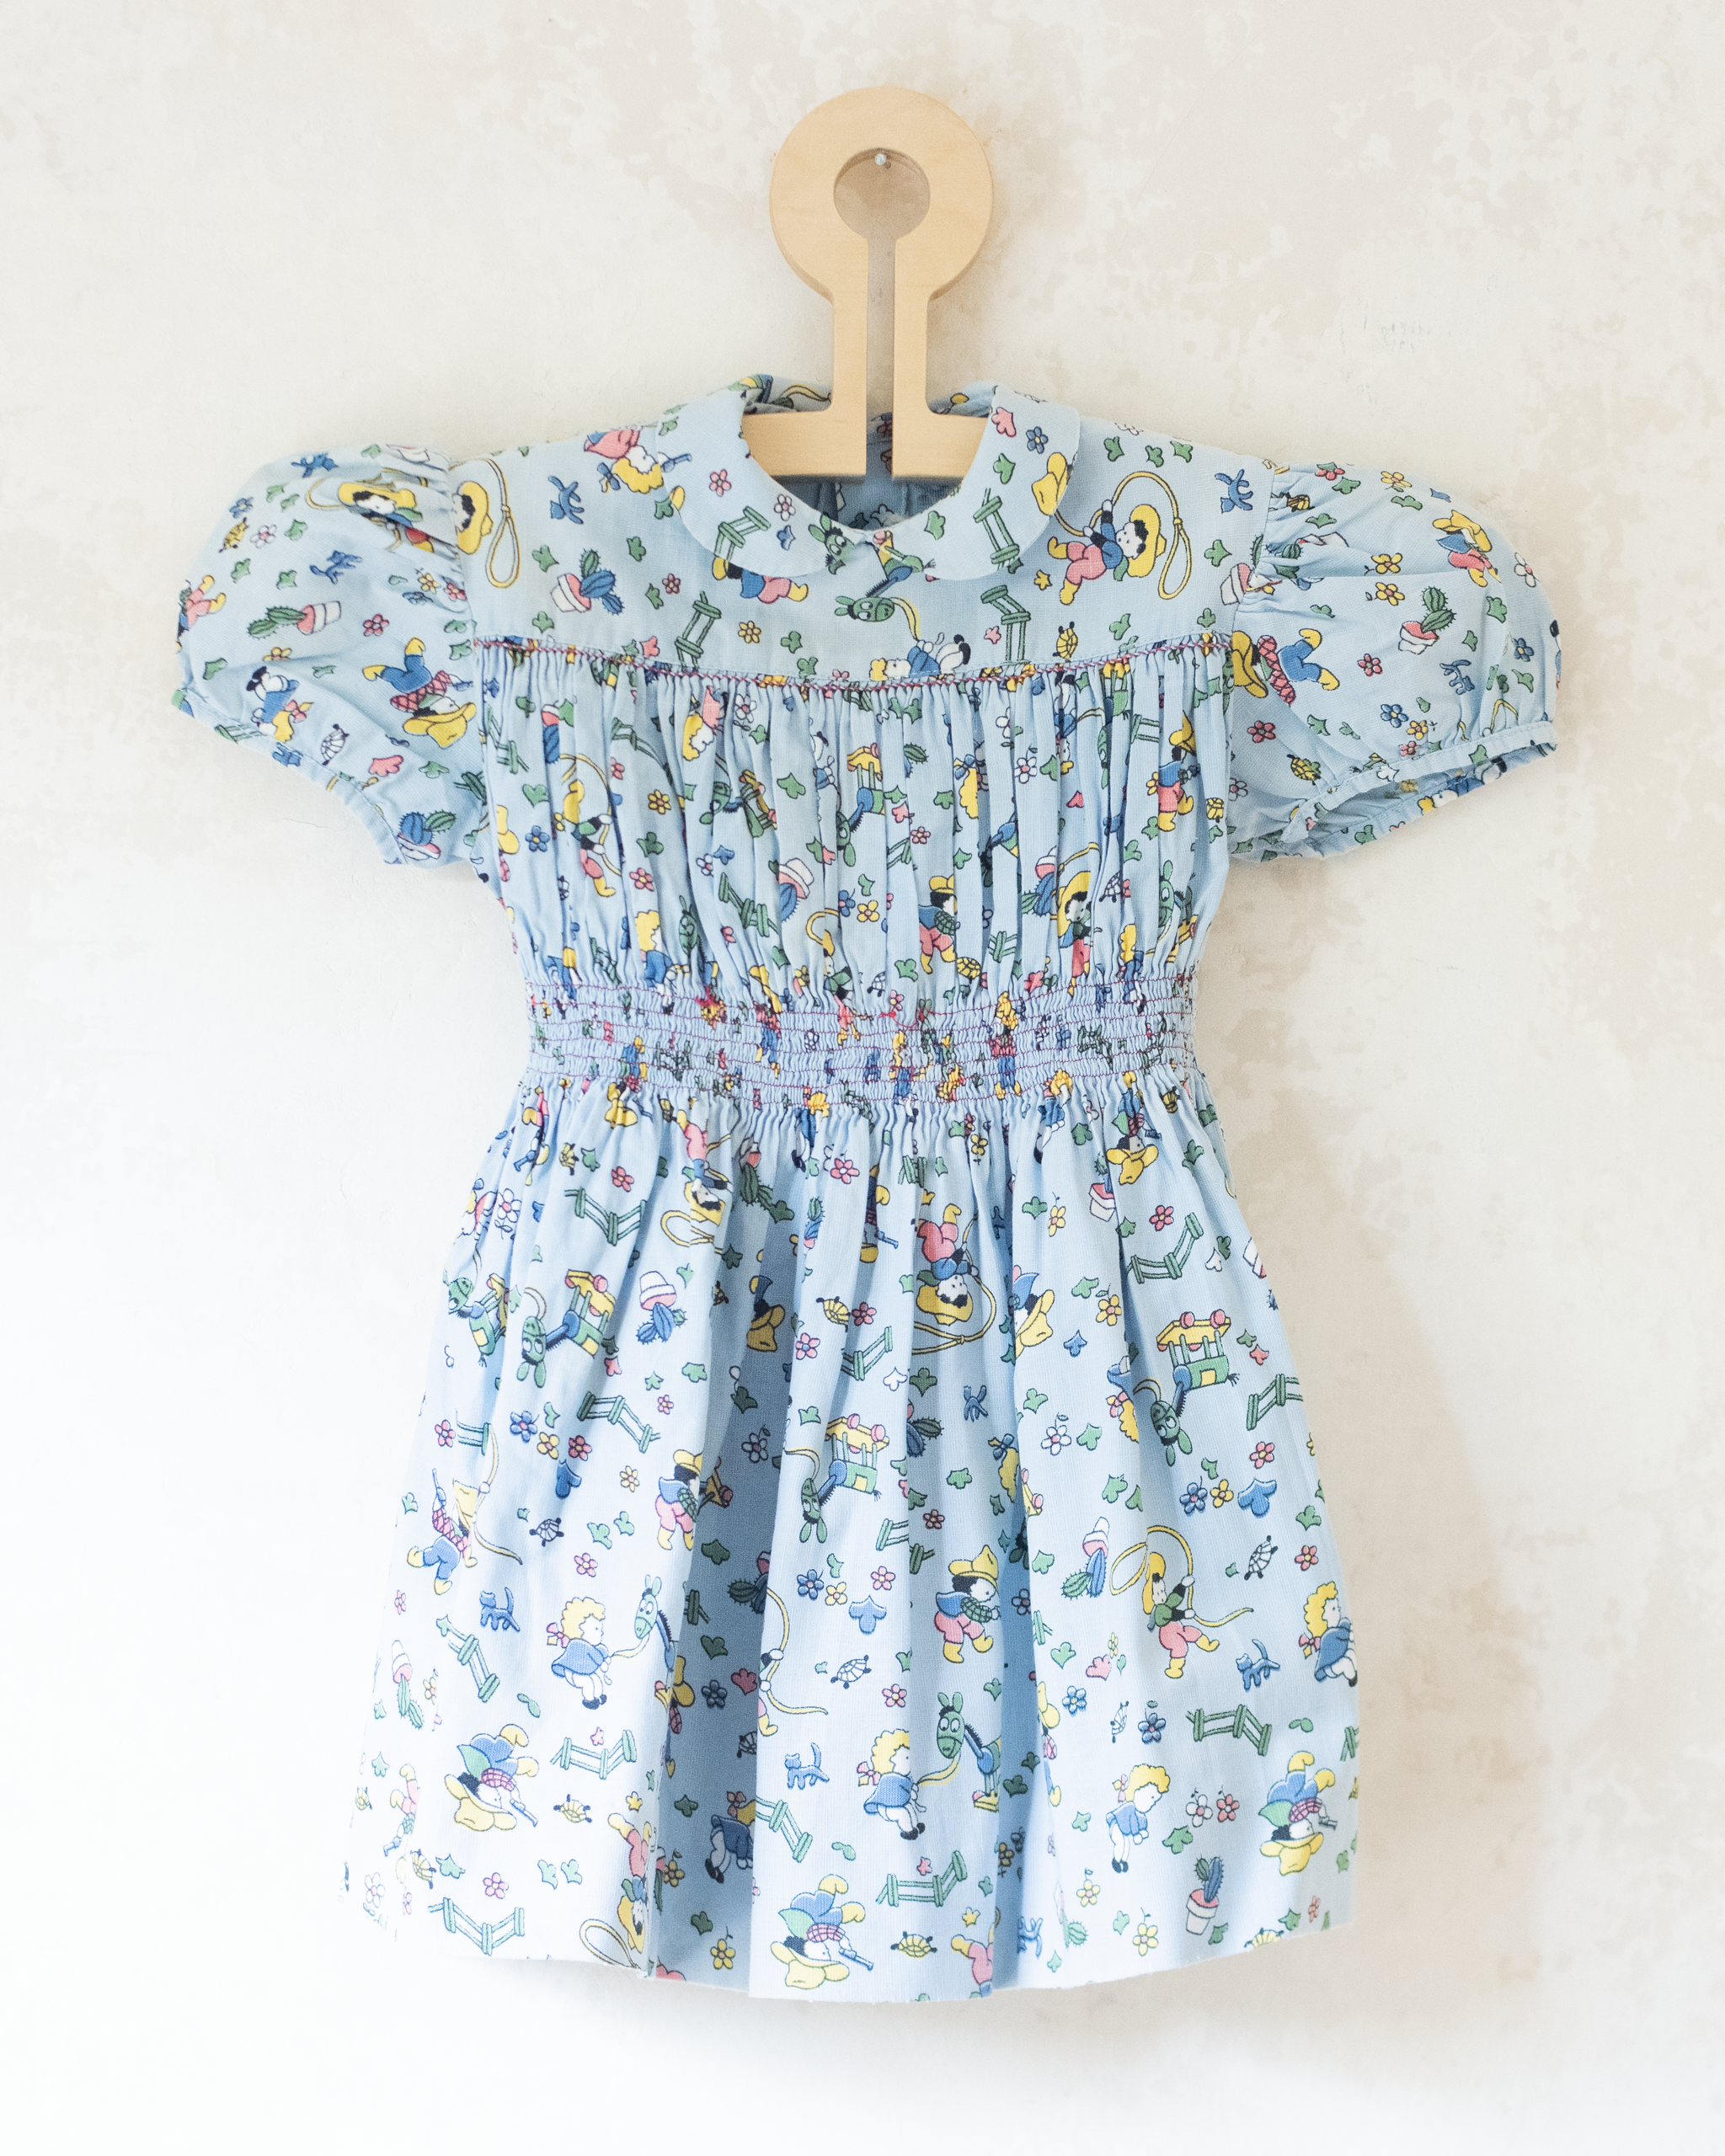 שמלה נוסטלגית עם הדפסי ילדים וצעצועים | 18-24 חודשים